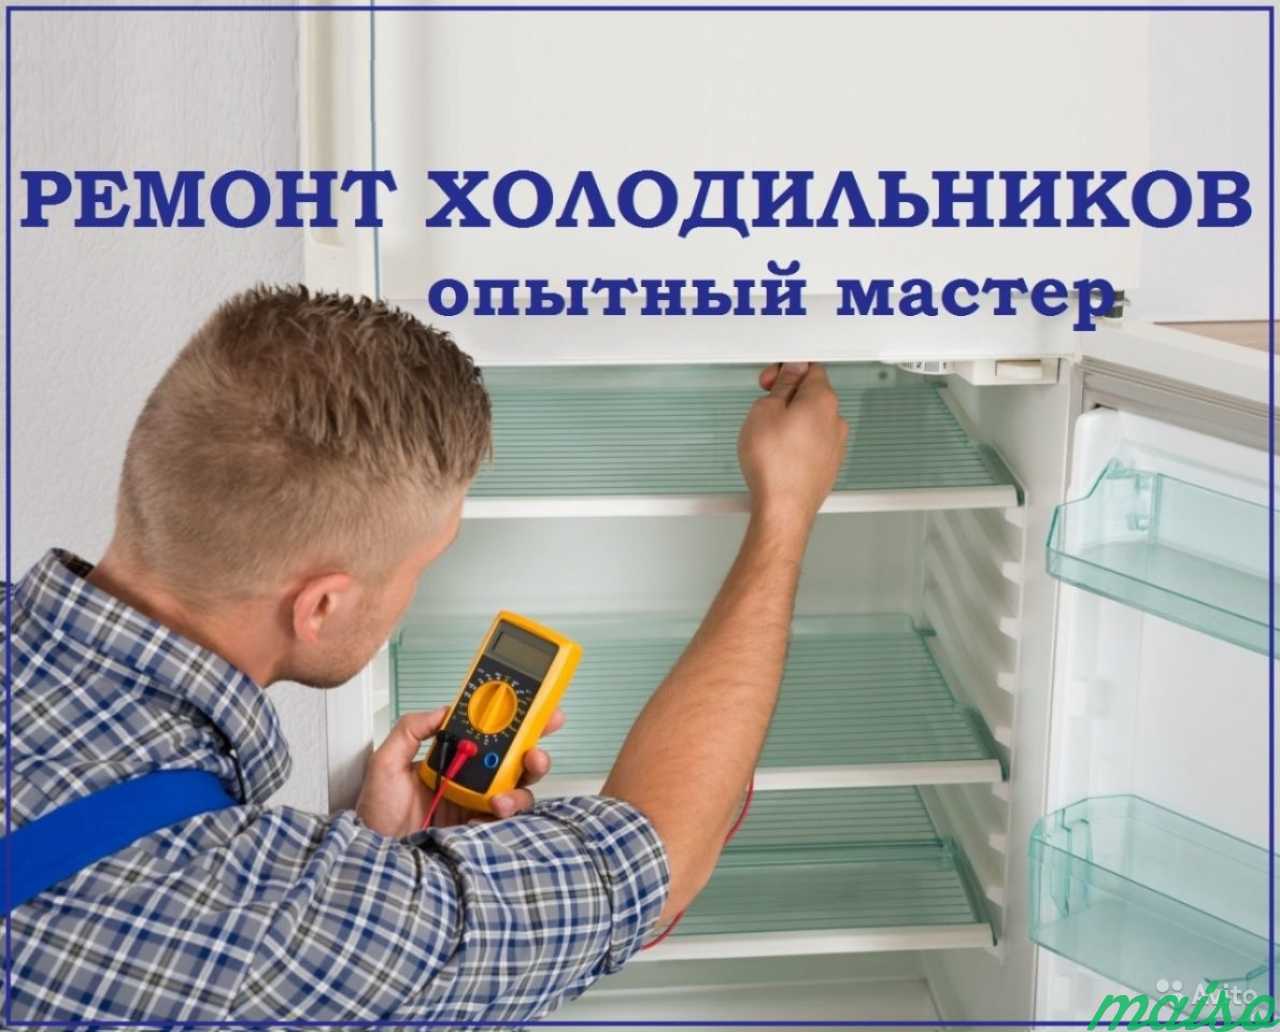 Ремонт холодильников на дому в Санкт-Петербурге. Фото 1